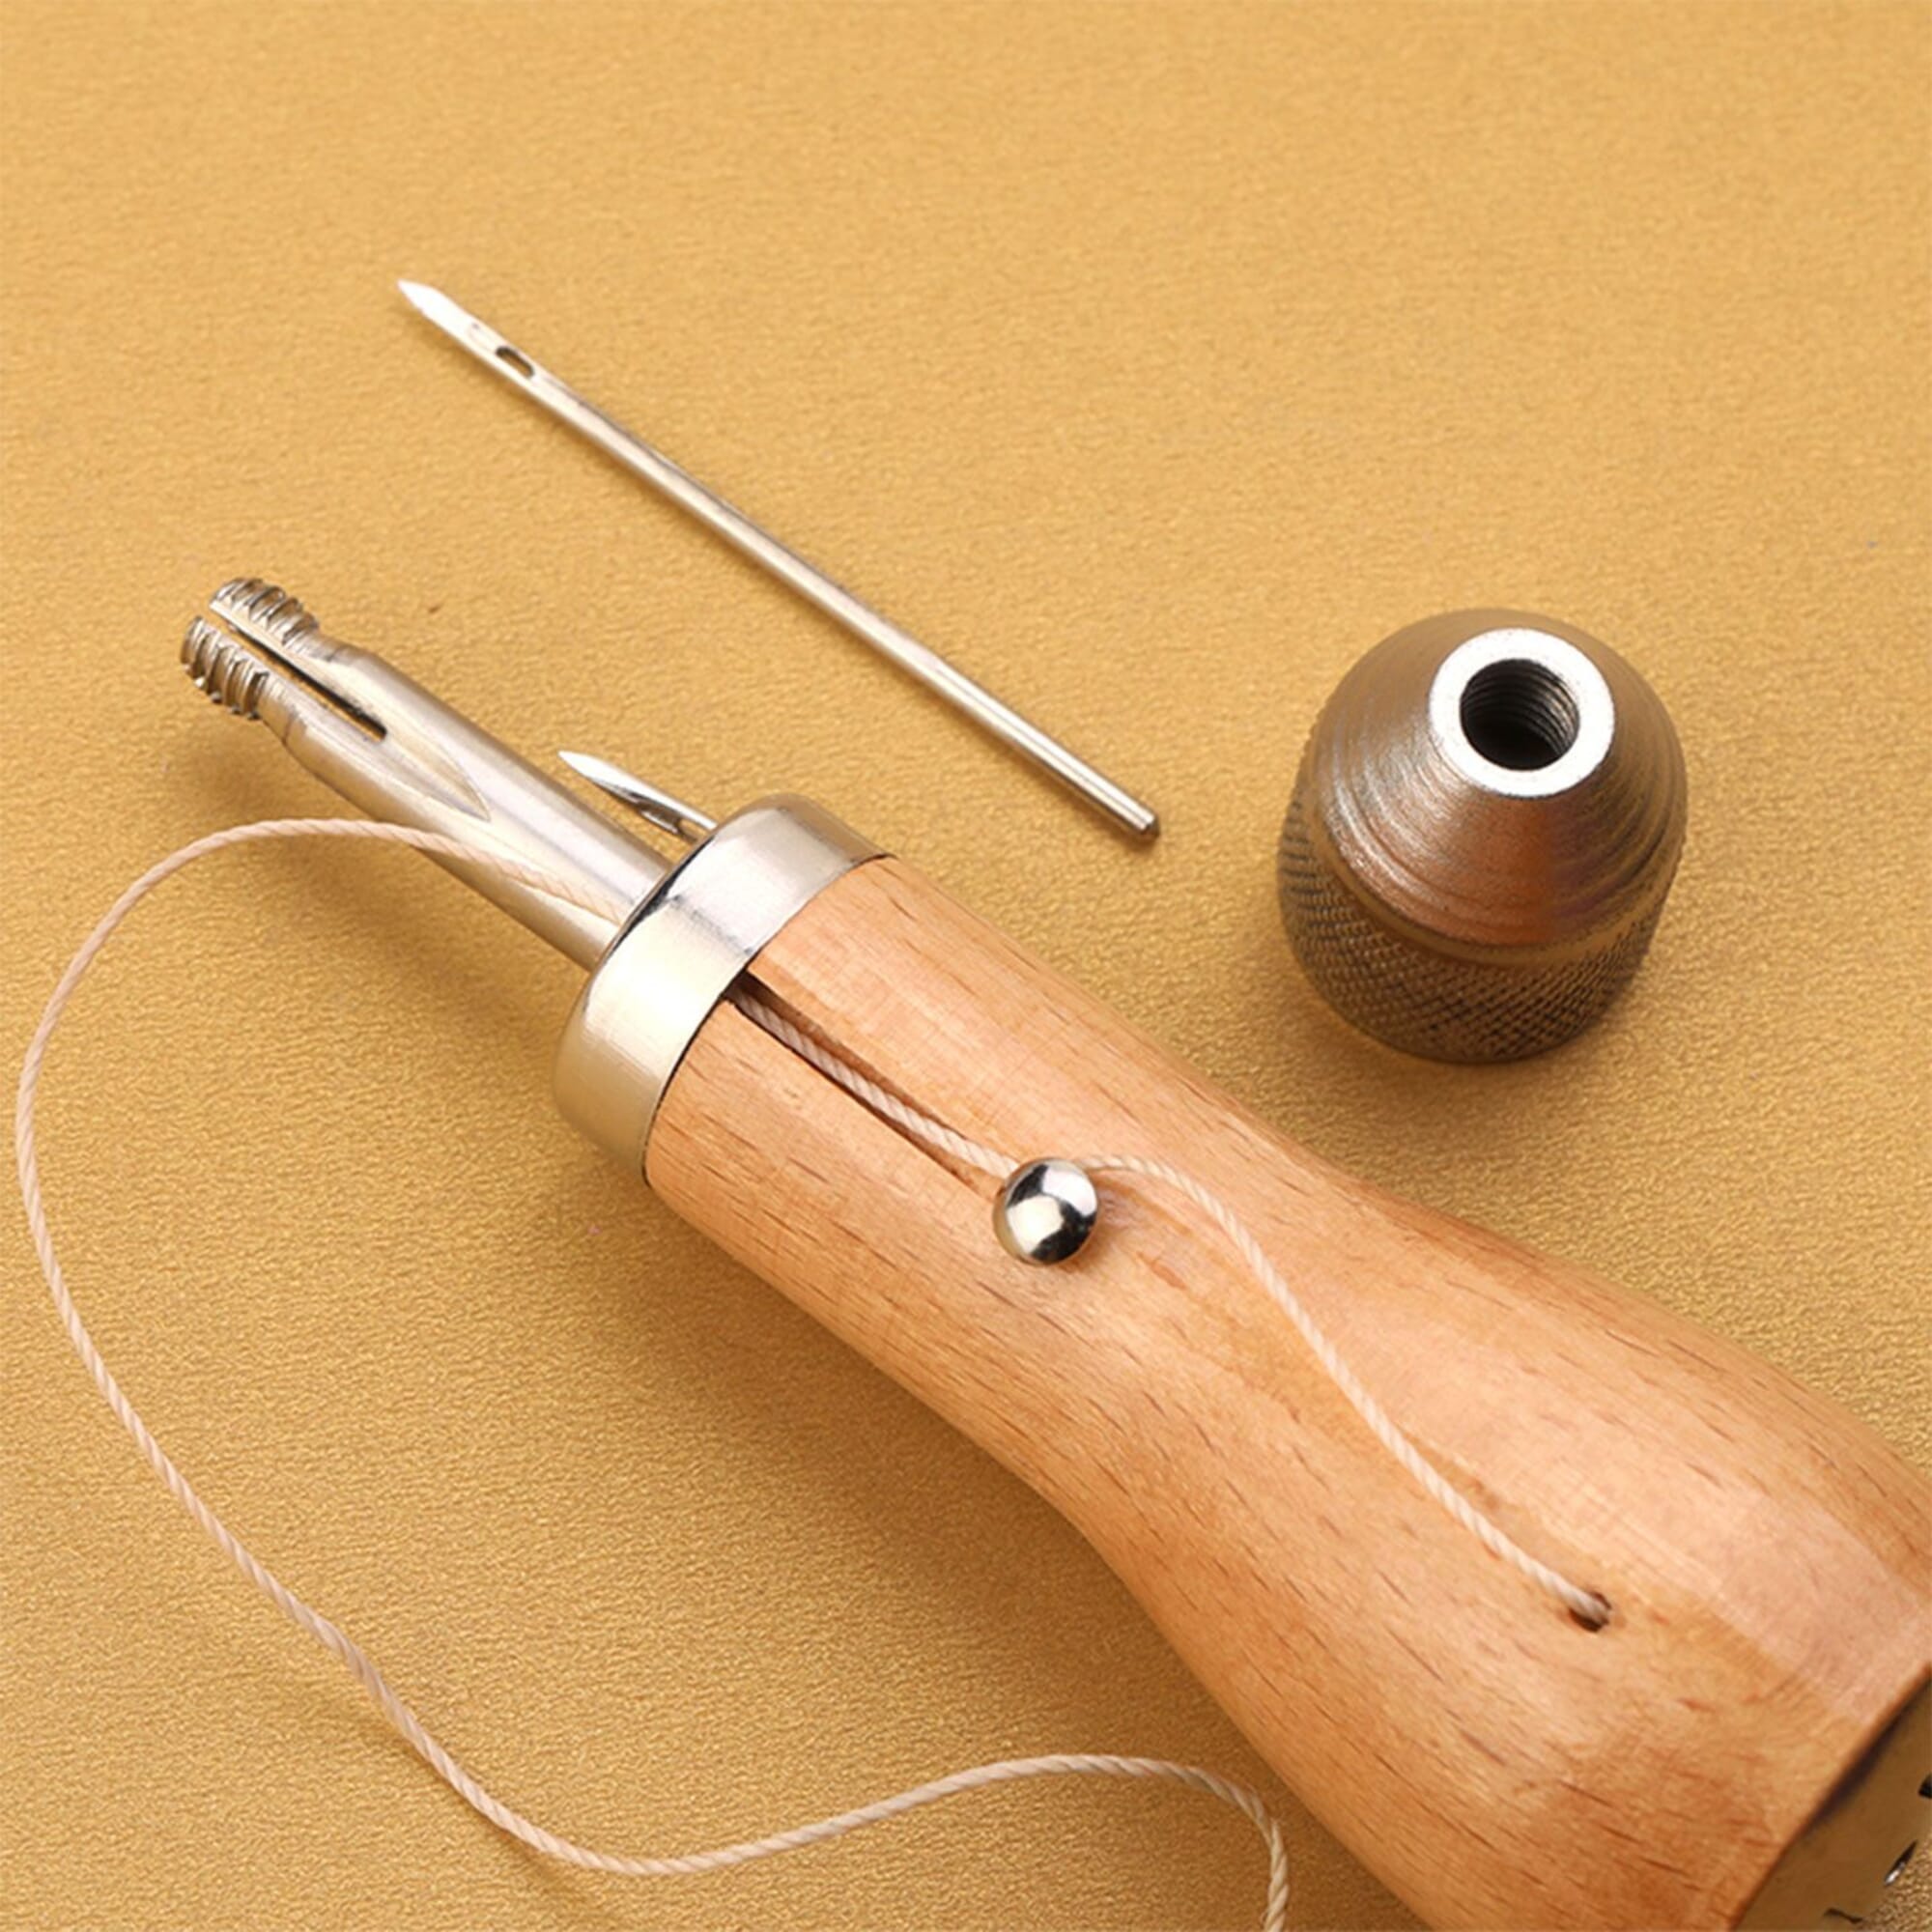 Speedy Stitcher Sewing Awl Kit